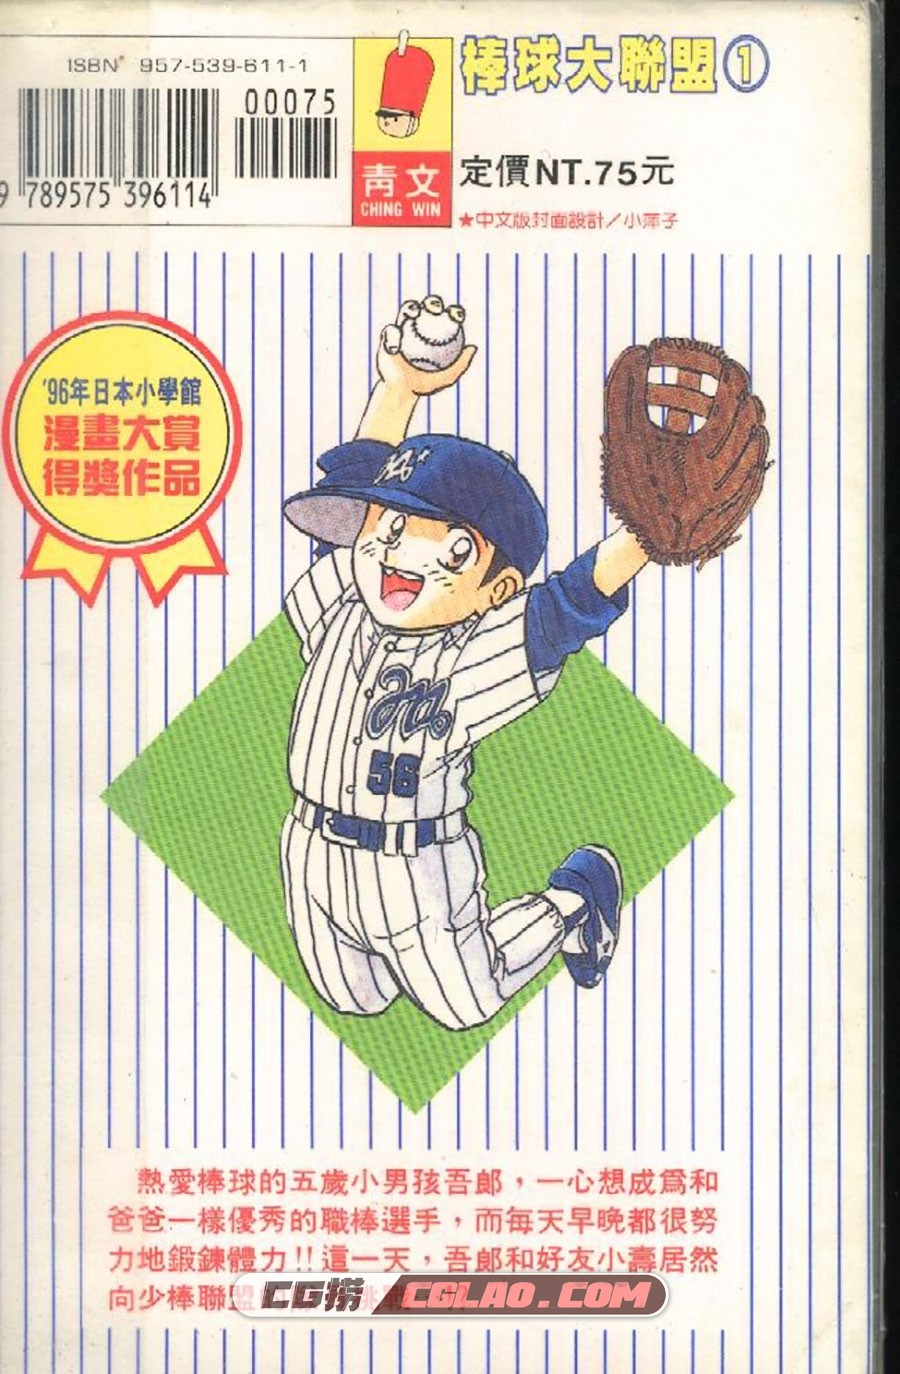 棒球大联盟 满田拓也 1-78卷 漫画全集下载 百度网盘下载,0002.jpg